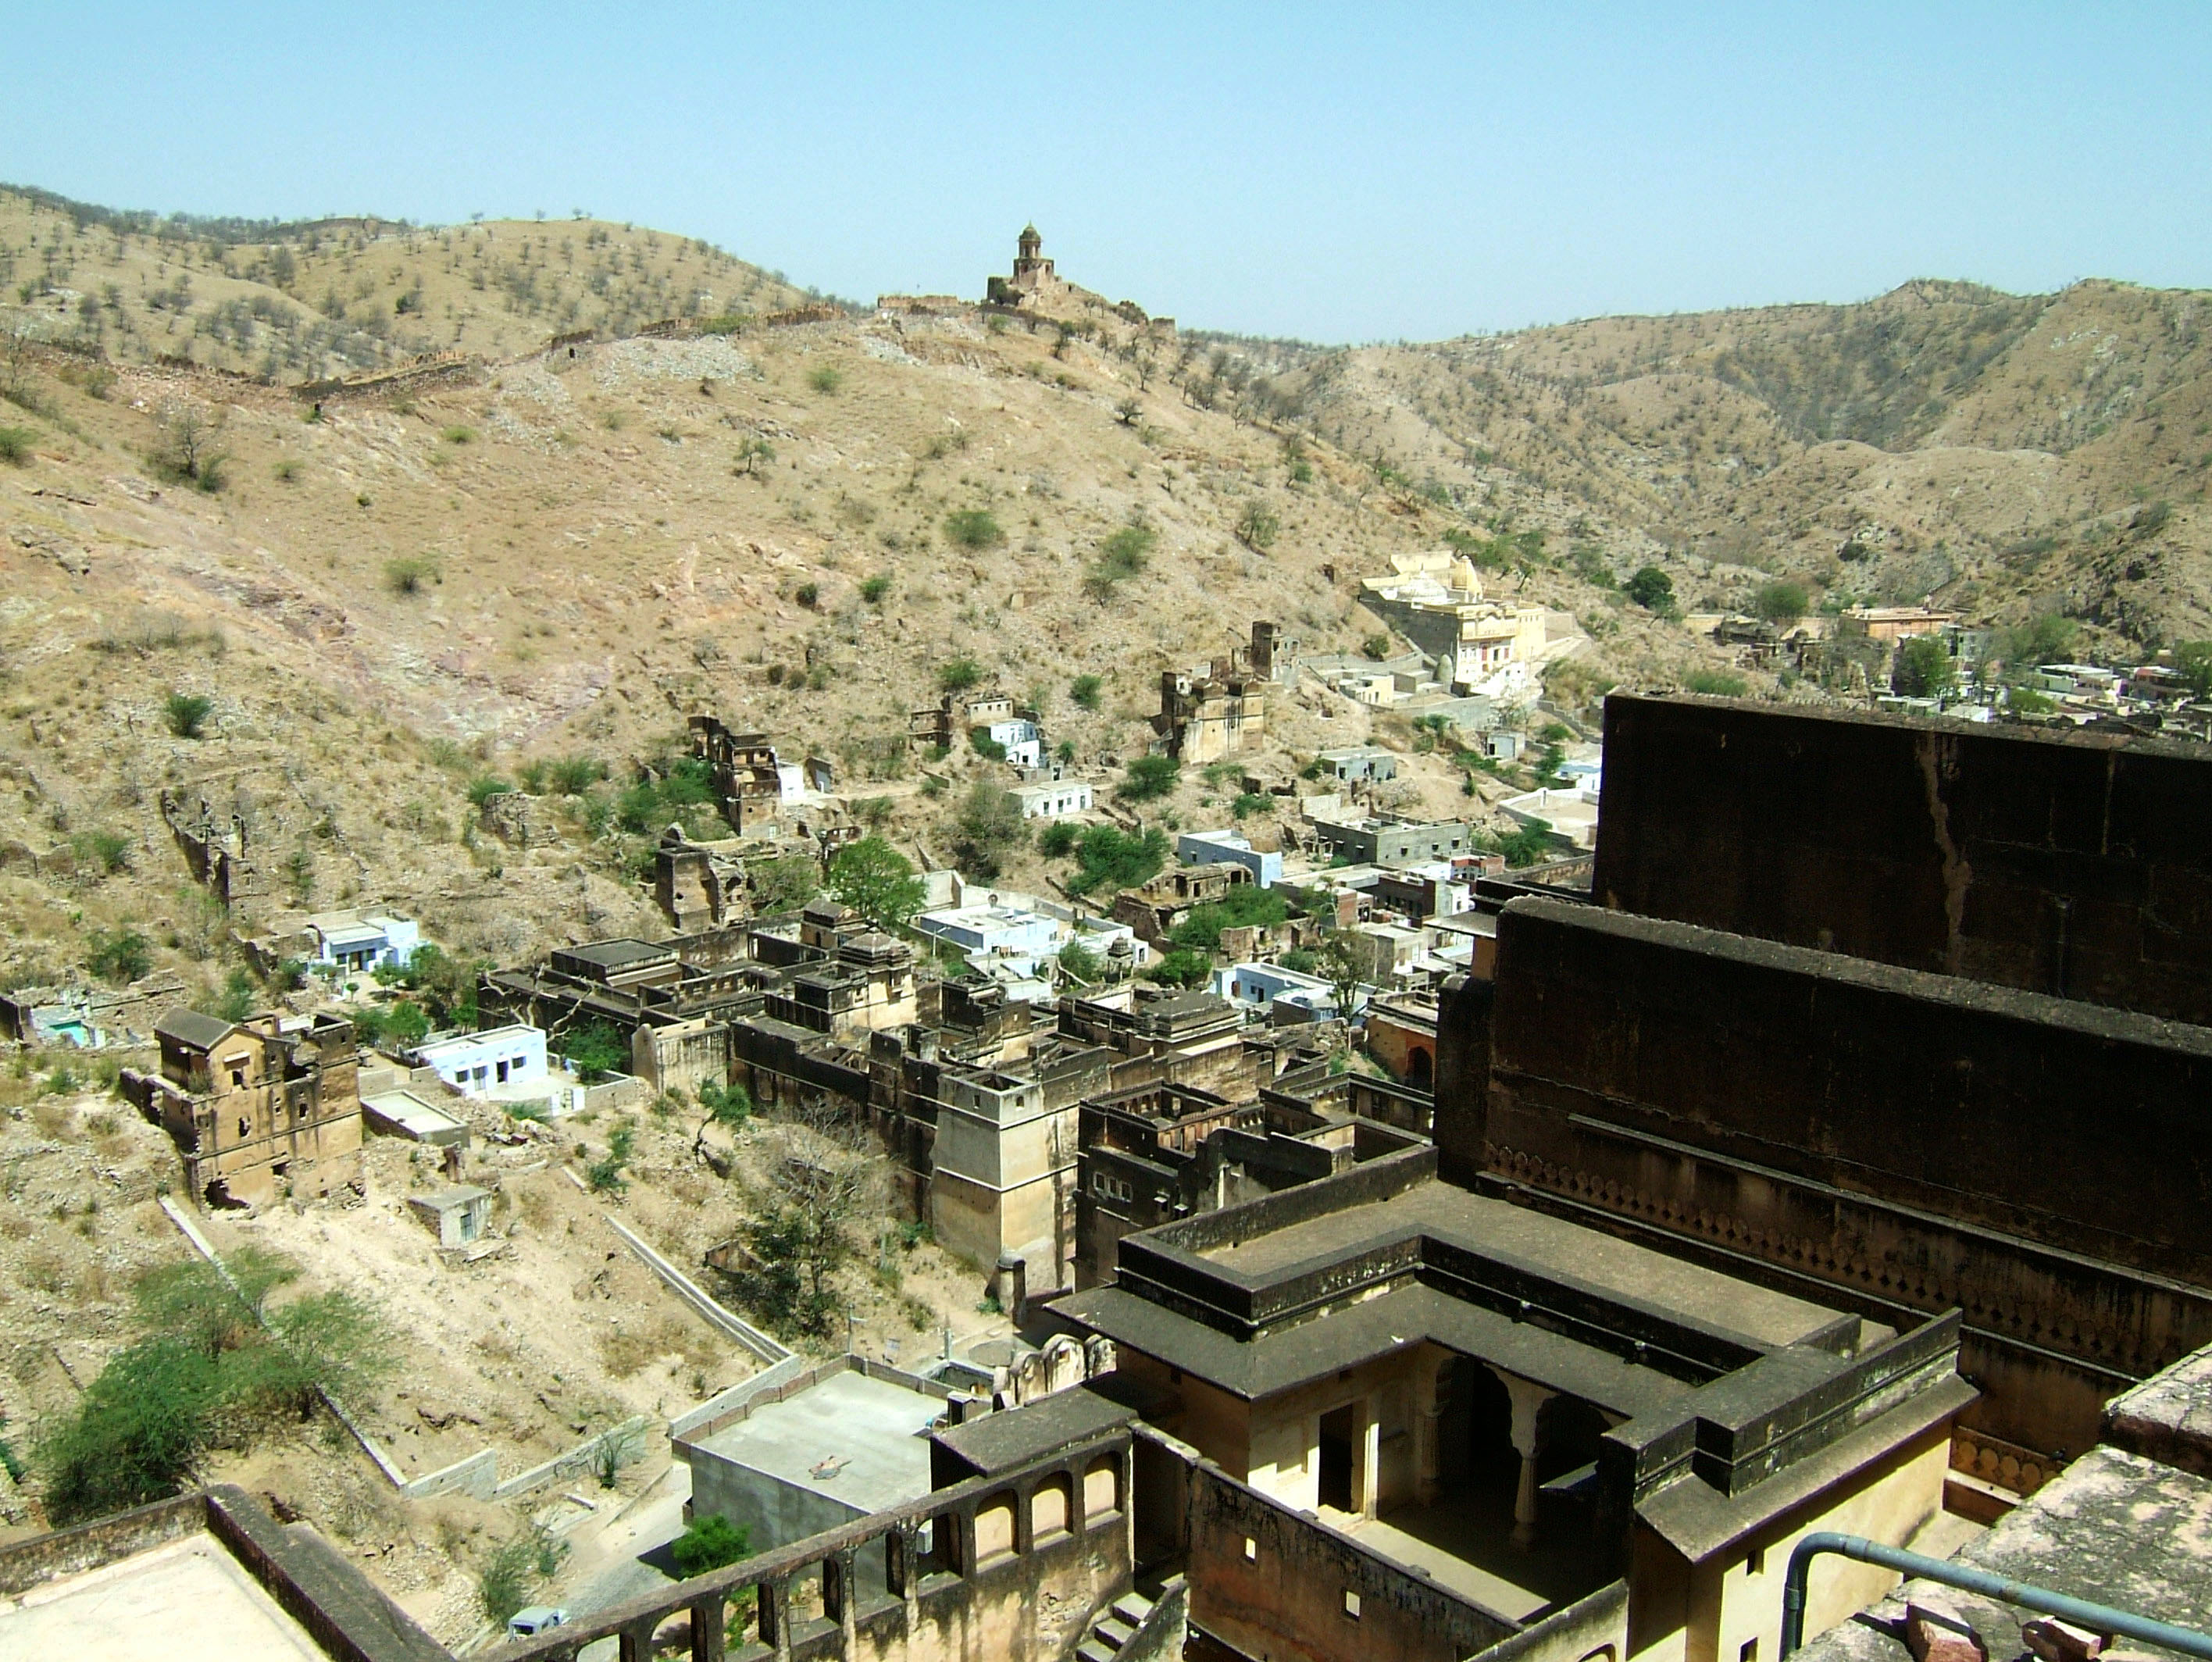 Rajasthan Jaipur Amber Fort panoramic views India Apr 2004 02